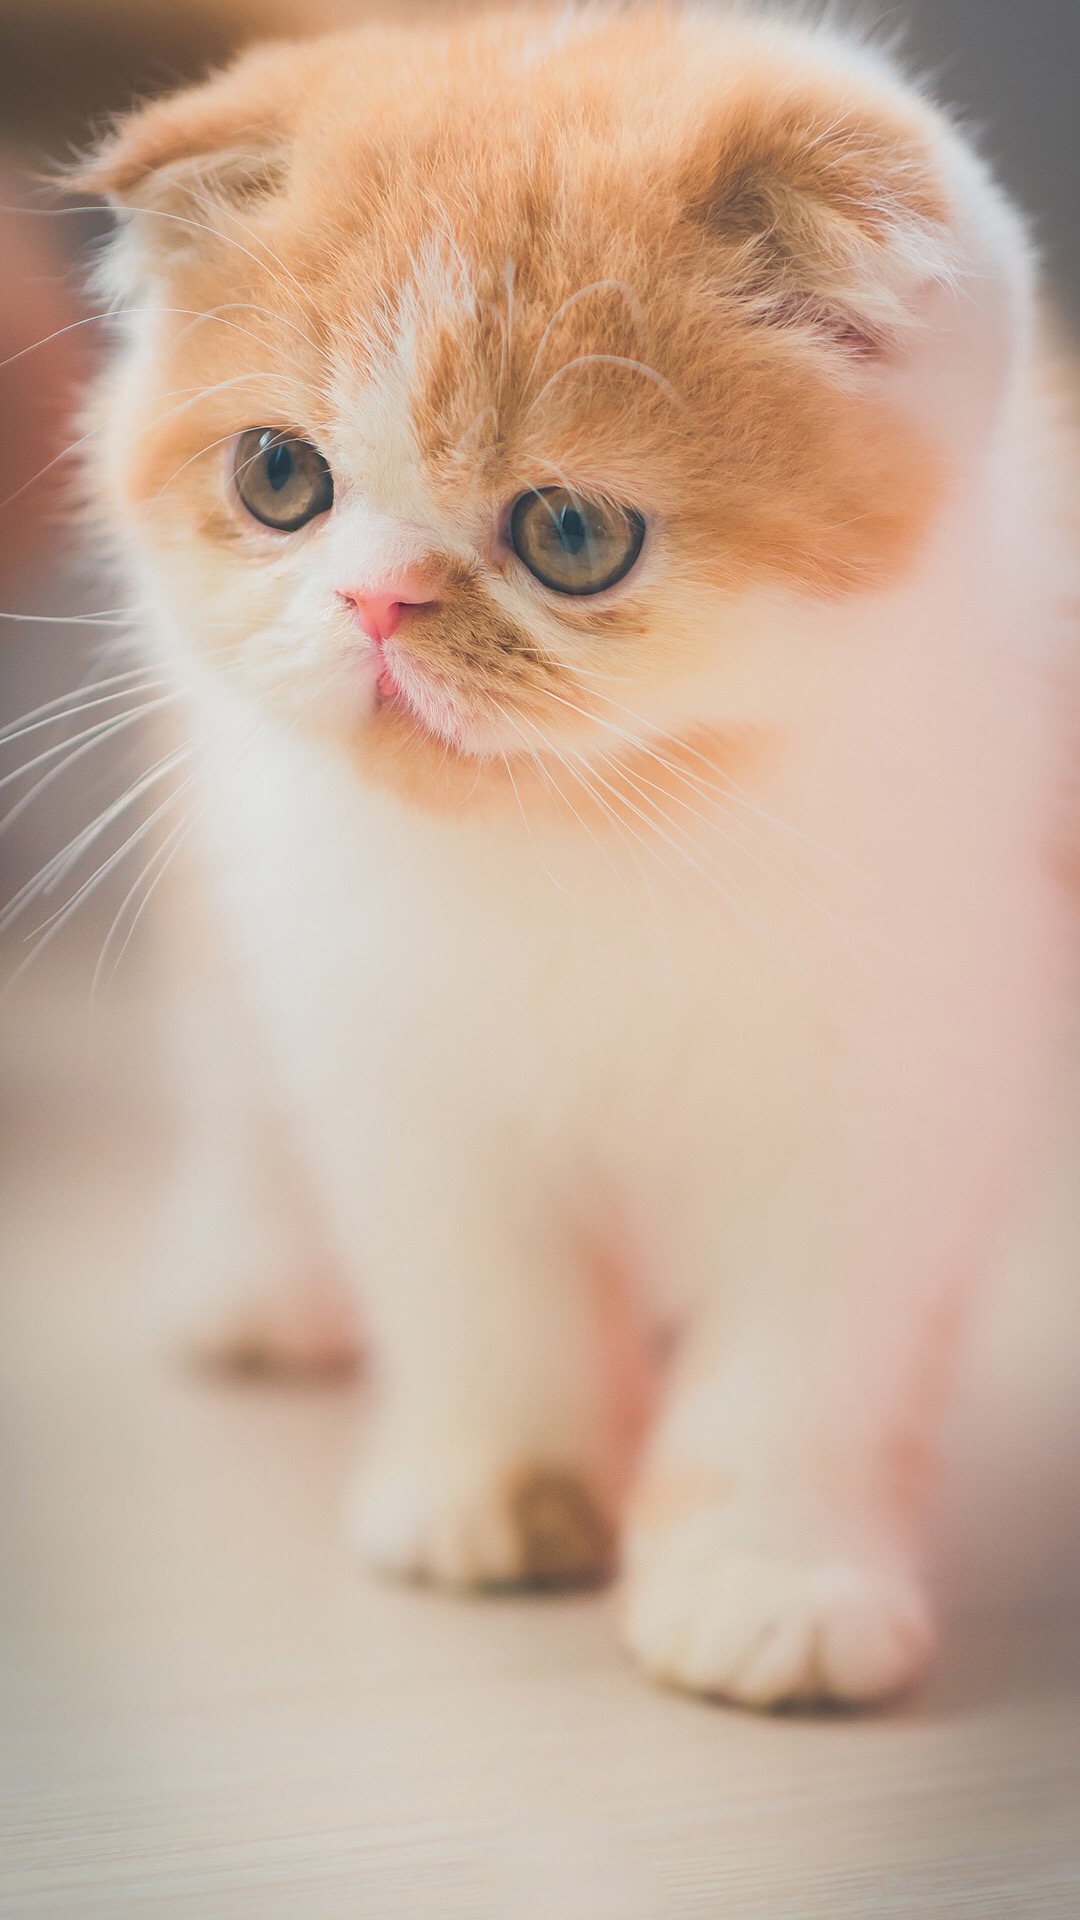 可爱喵星人卖萌图片 可爱的小猫咪高清手机壁纸(8)